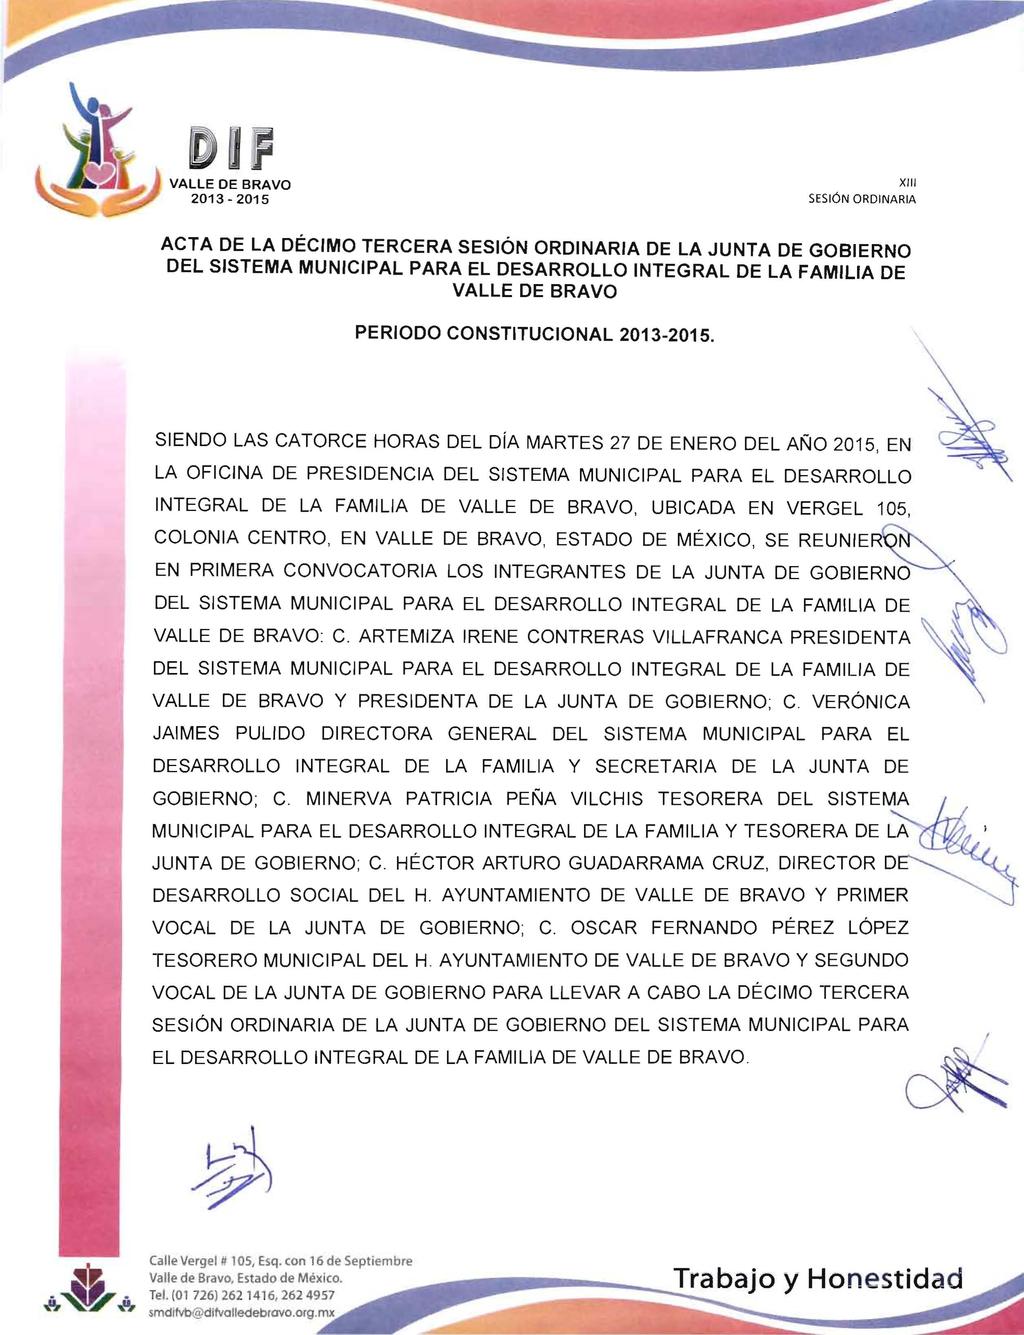 - ",.. SESIÓN ORDINARIA ACTA DE LA DÉCIMO TERCERA DE LA JUNTA DE GOBIERNO PERIODO CONSTITUCIONAL 2013-2015.